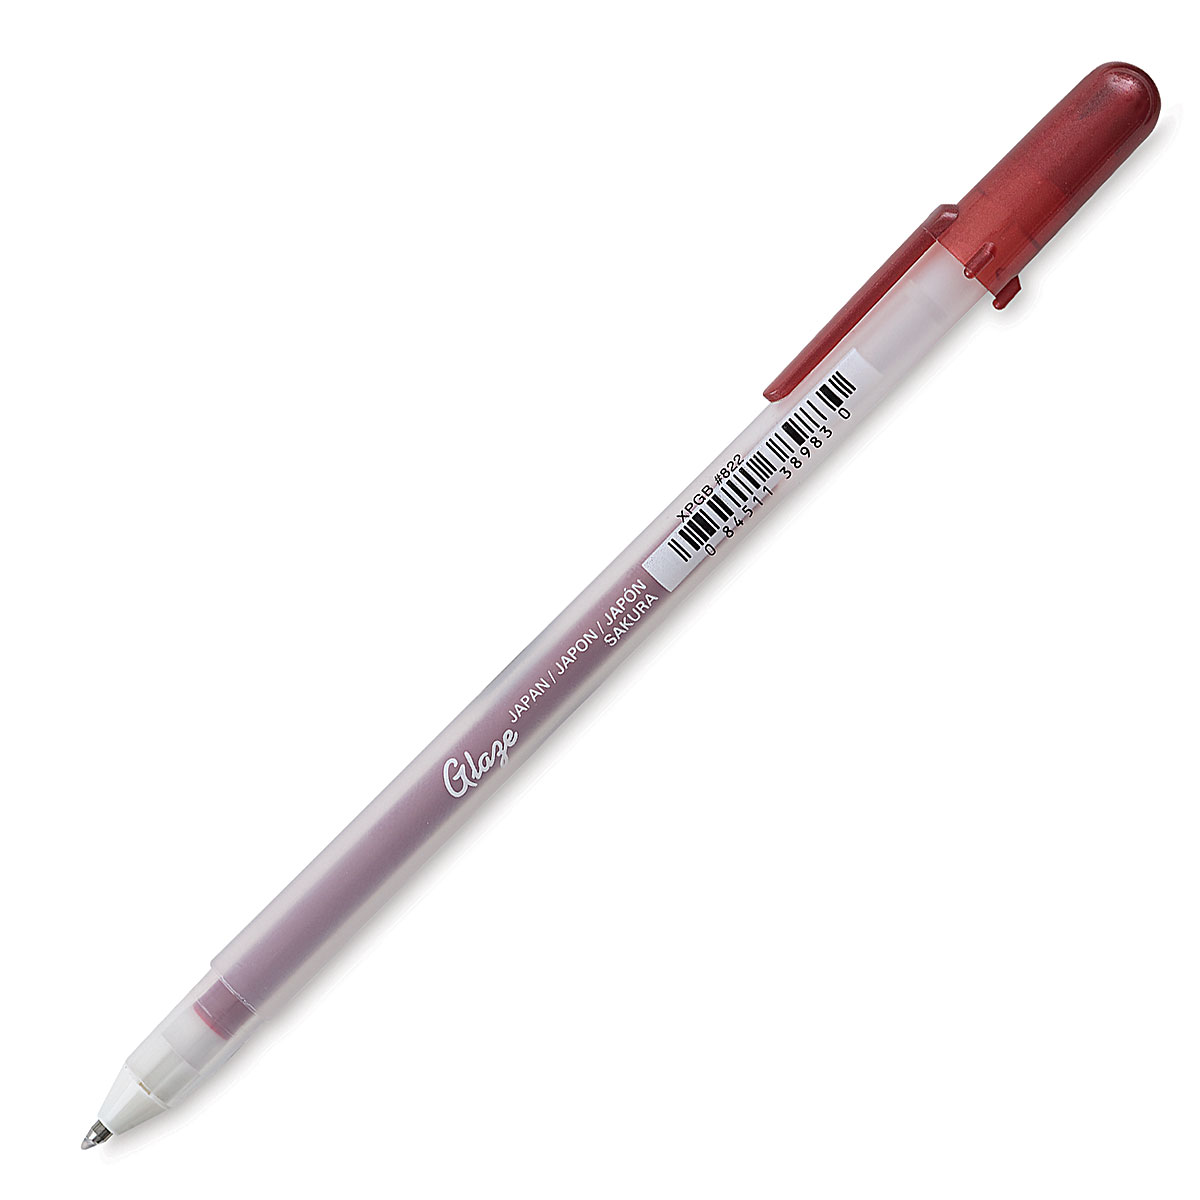 Real Red Gelly Roll Glaze Pen @ Raw Materials Art Supplies